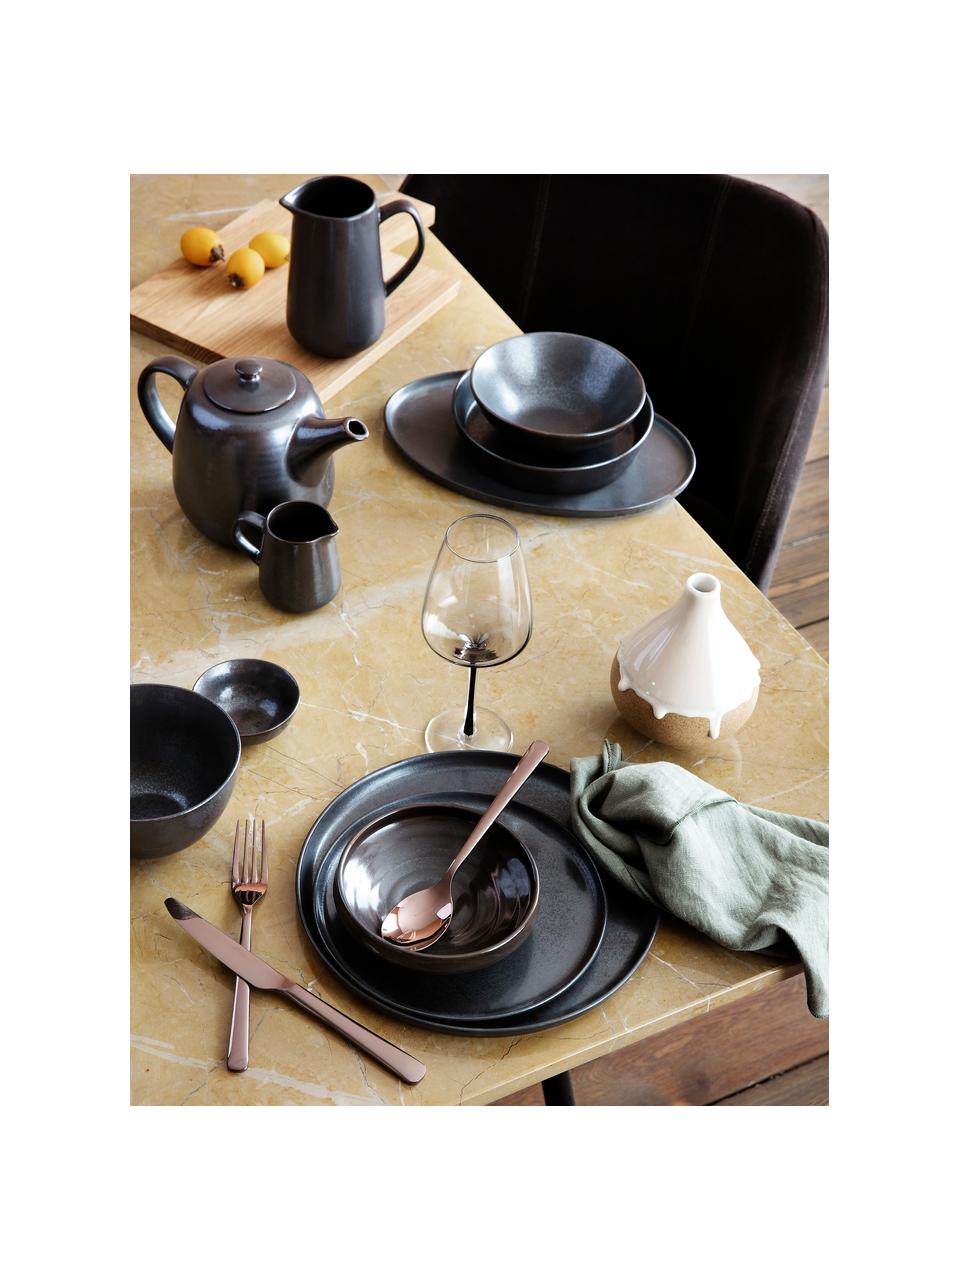 Handgemachte Frühstücksteller Esrum Night, 4 Stück, Steingut, glasiert, Graubraun, matt silbrig schimmernd, Ø 21 cm